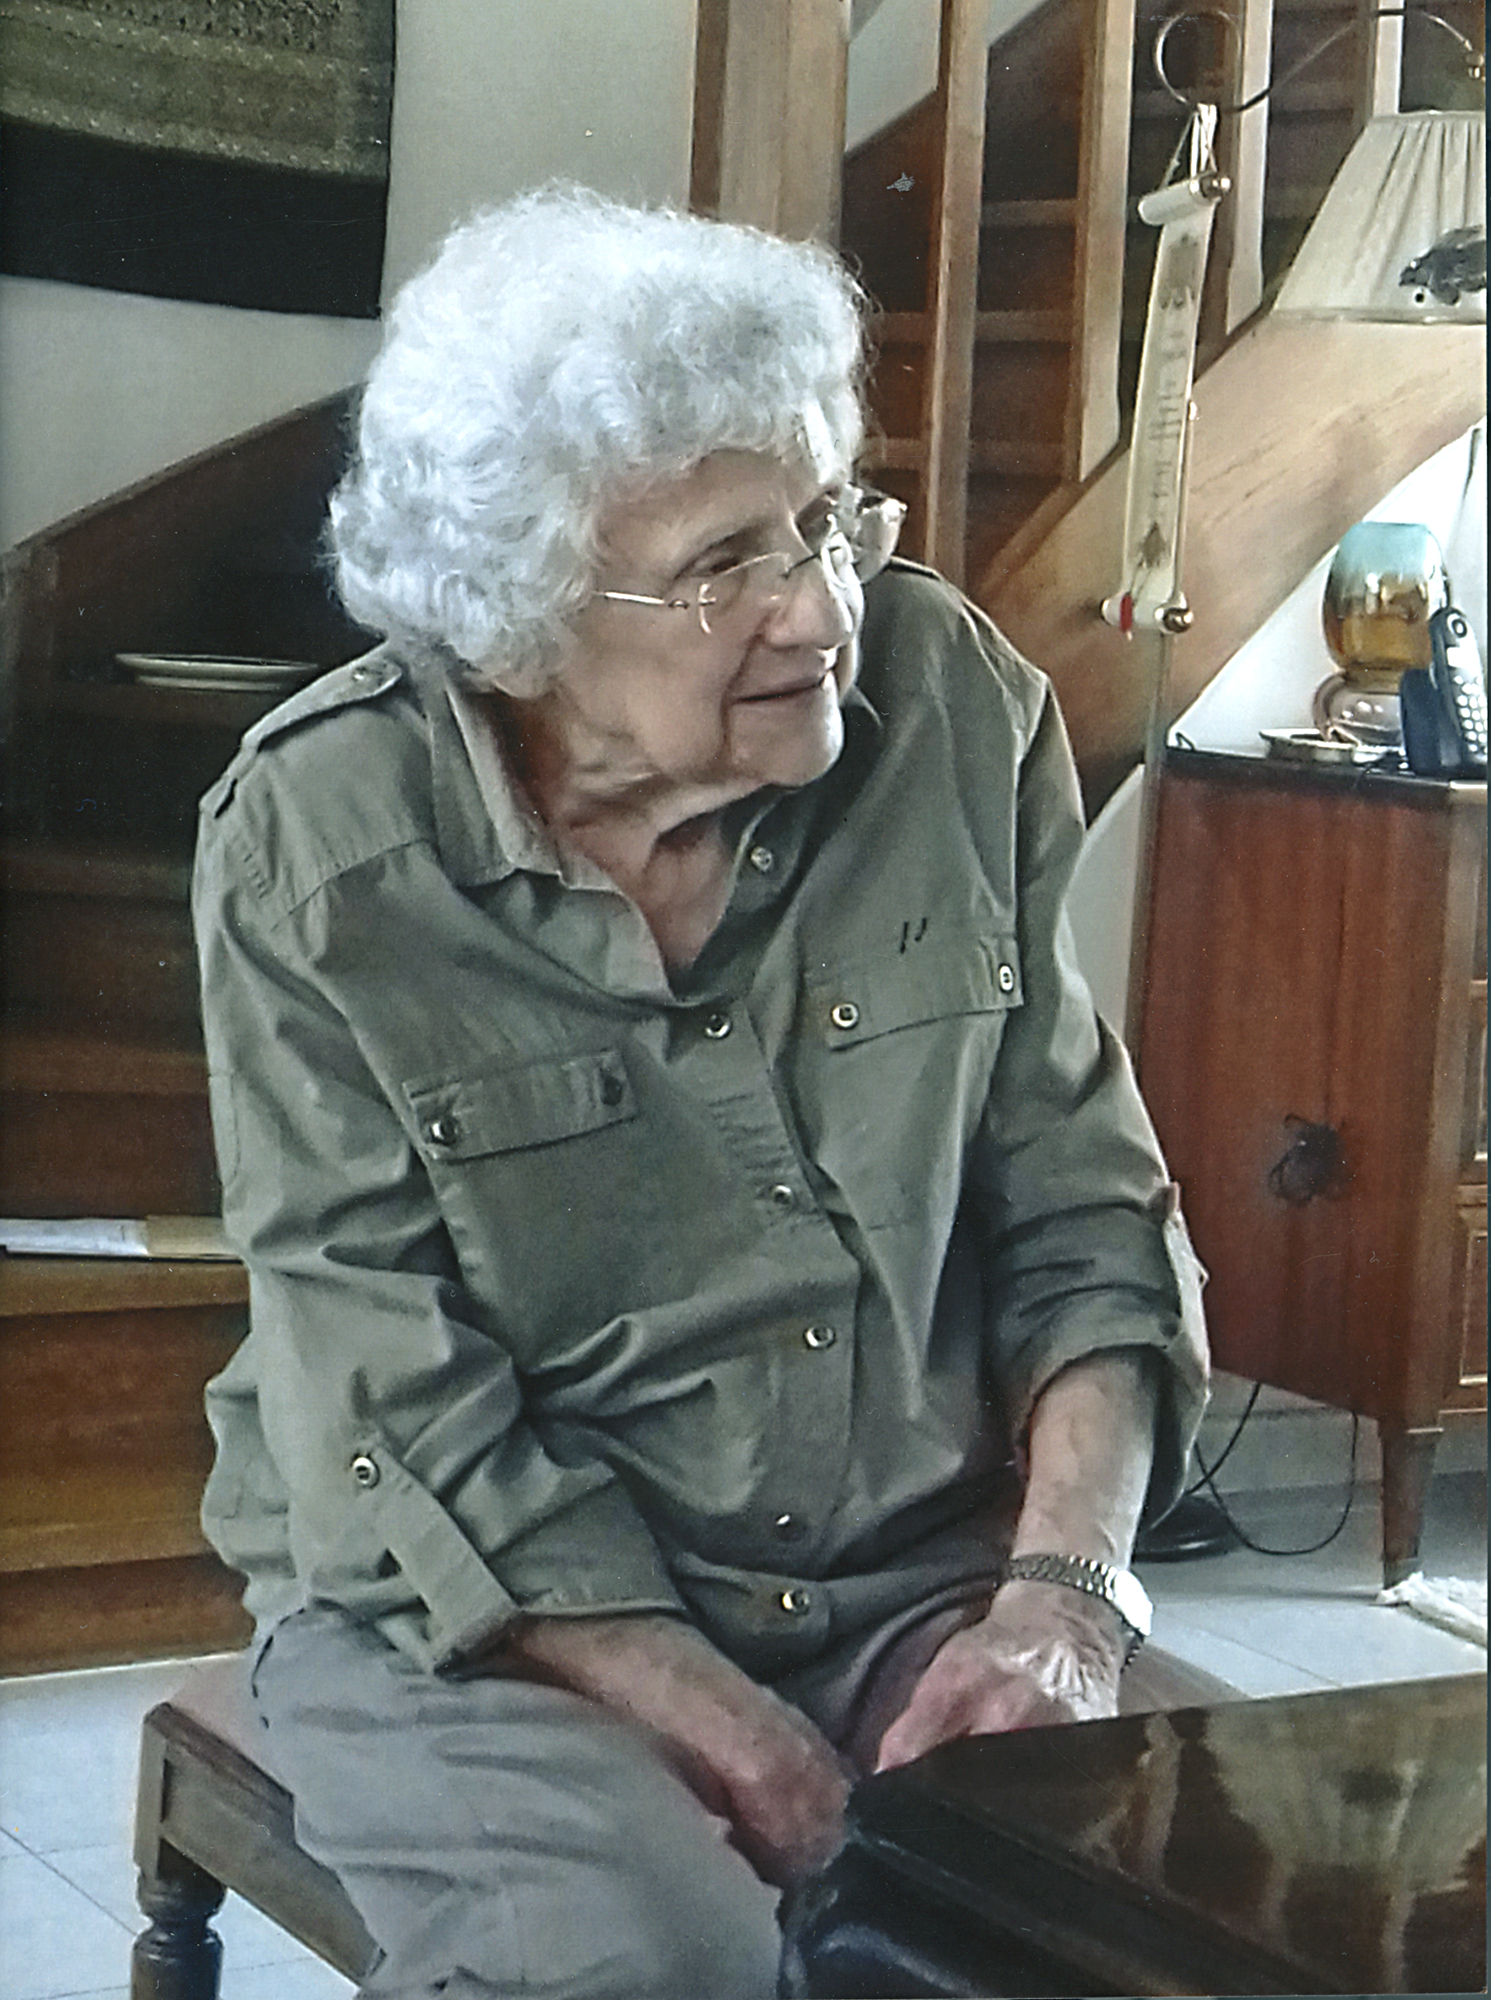 Fotografia współczesna przedstawiająca Janinę Jasińską-Luterek; starsza kobieta, z siwymi, kręconymi włosami do ramion, w okularach, w ujęciu do kolan, siedząca na niskim stołku o rzeźbionych nogach. W tle fragment drewnianych schodów oraz elementy wyposażenia pokoju.